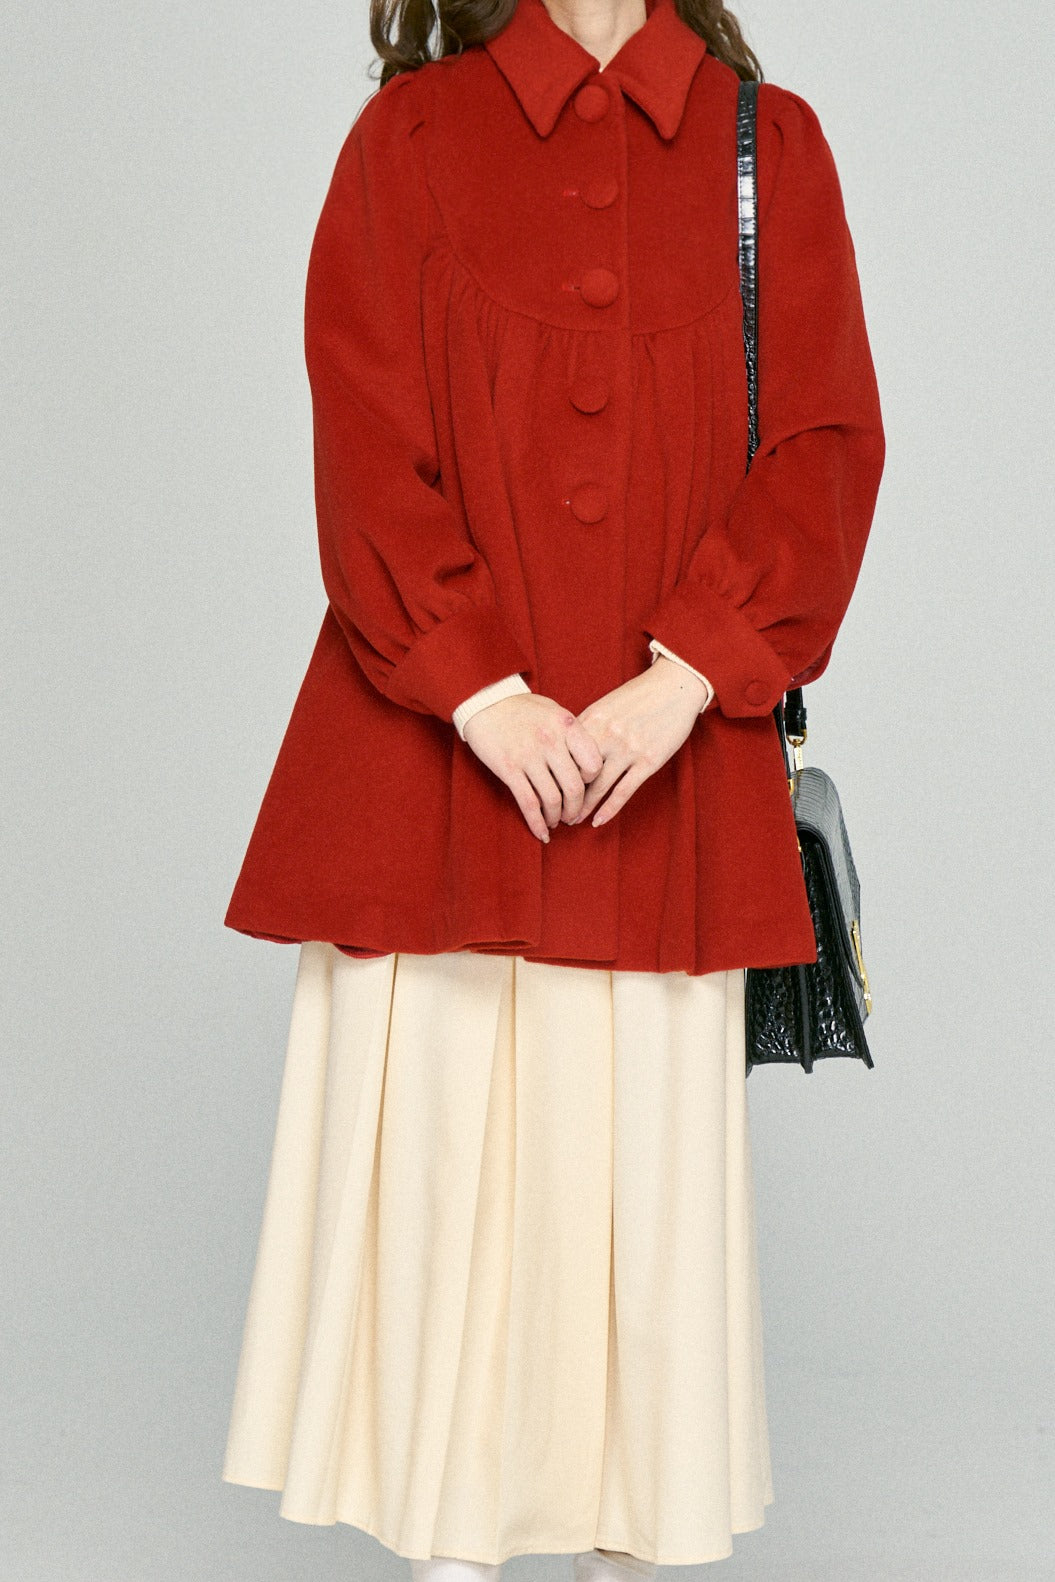 《キャロラインの顔はとても赤い》アーチステッチデザインウールコート